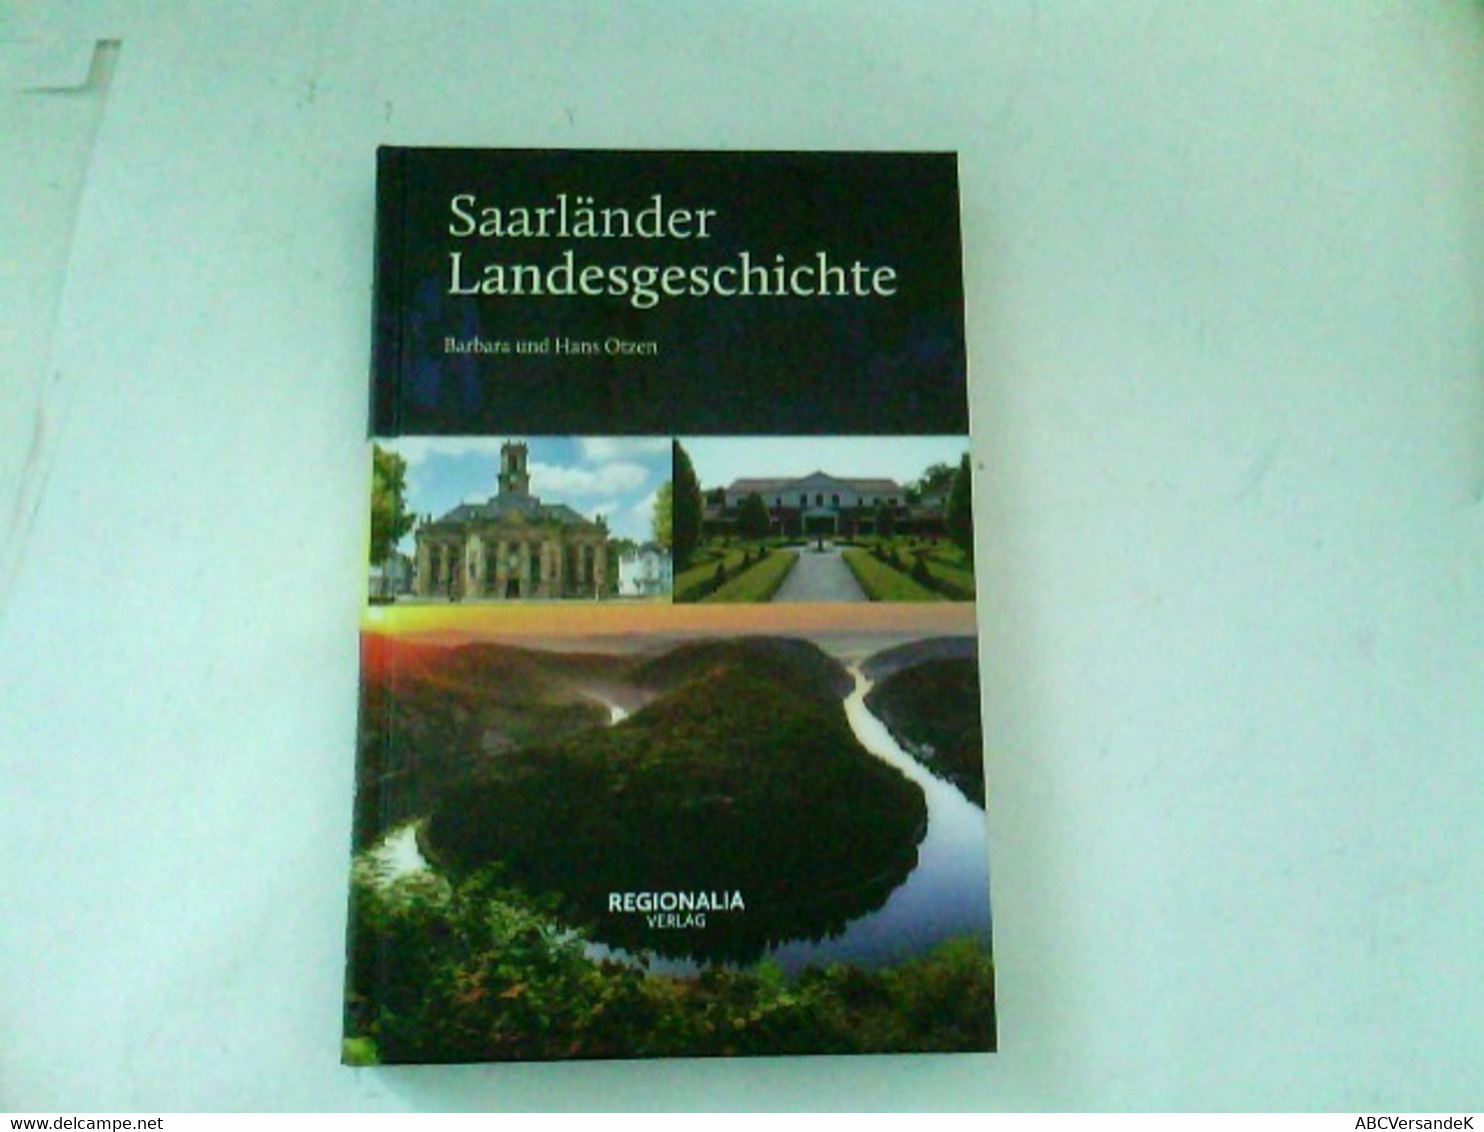 Saarländer Landesgeschichte - Germania